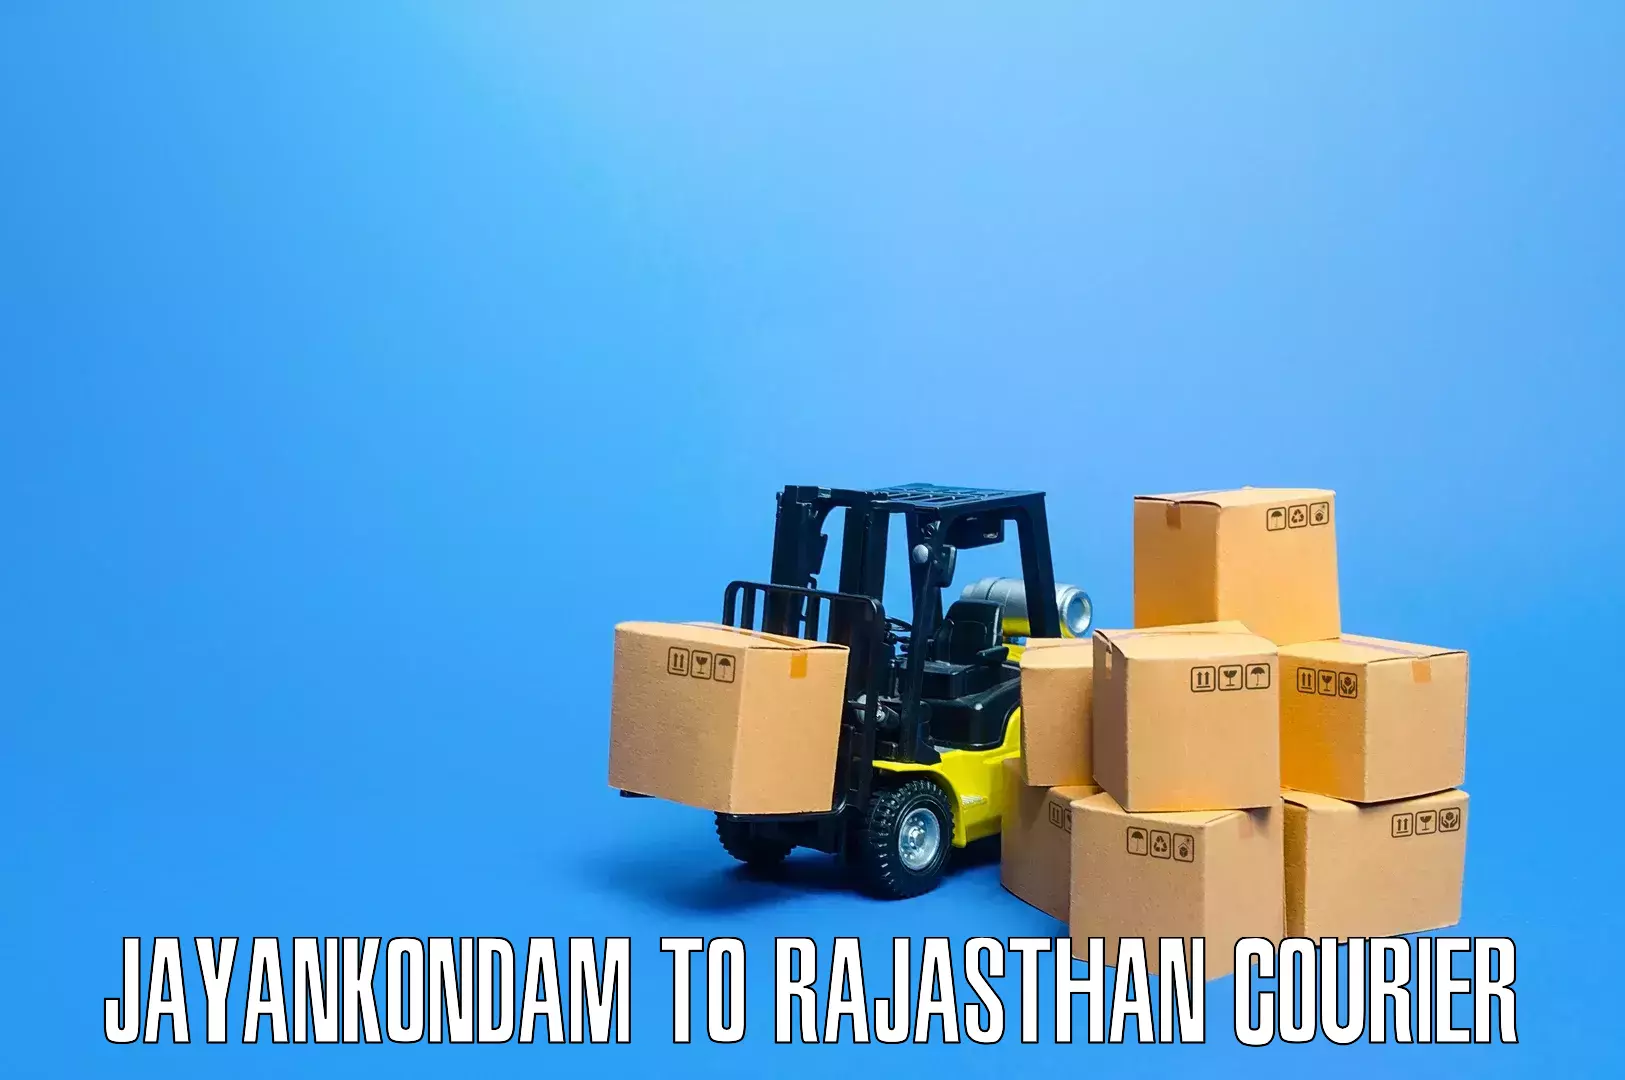 Professional packing and transport Jayankondam to Karauli